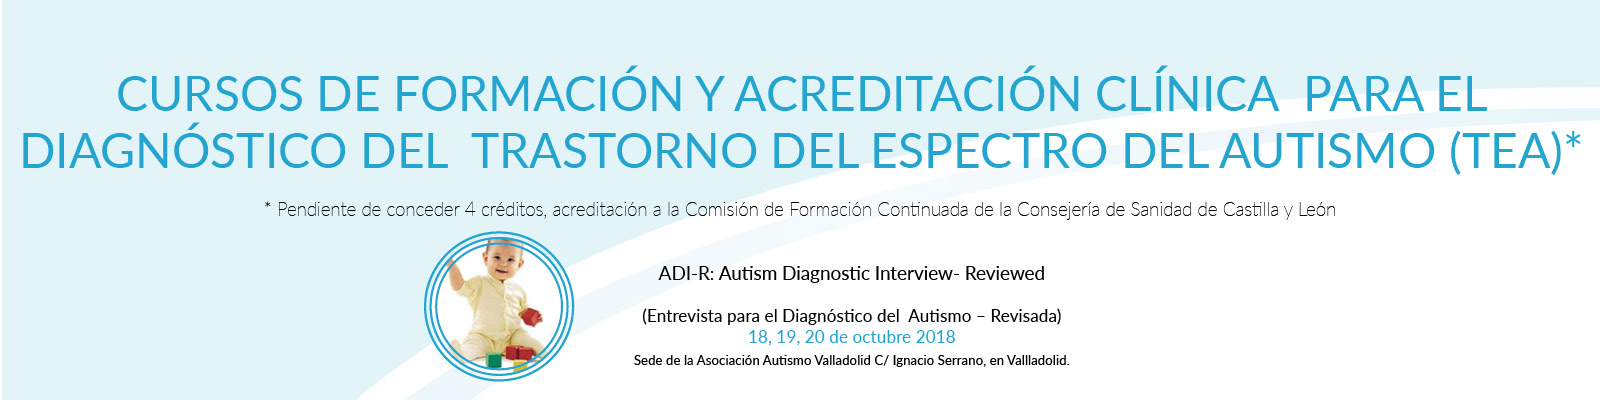 Curso de formación ADI-R, diagnóstico autismo